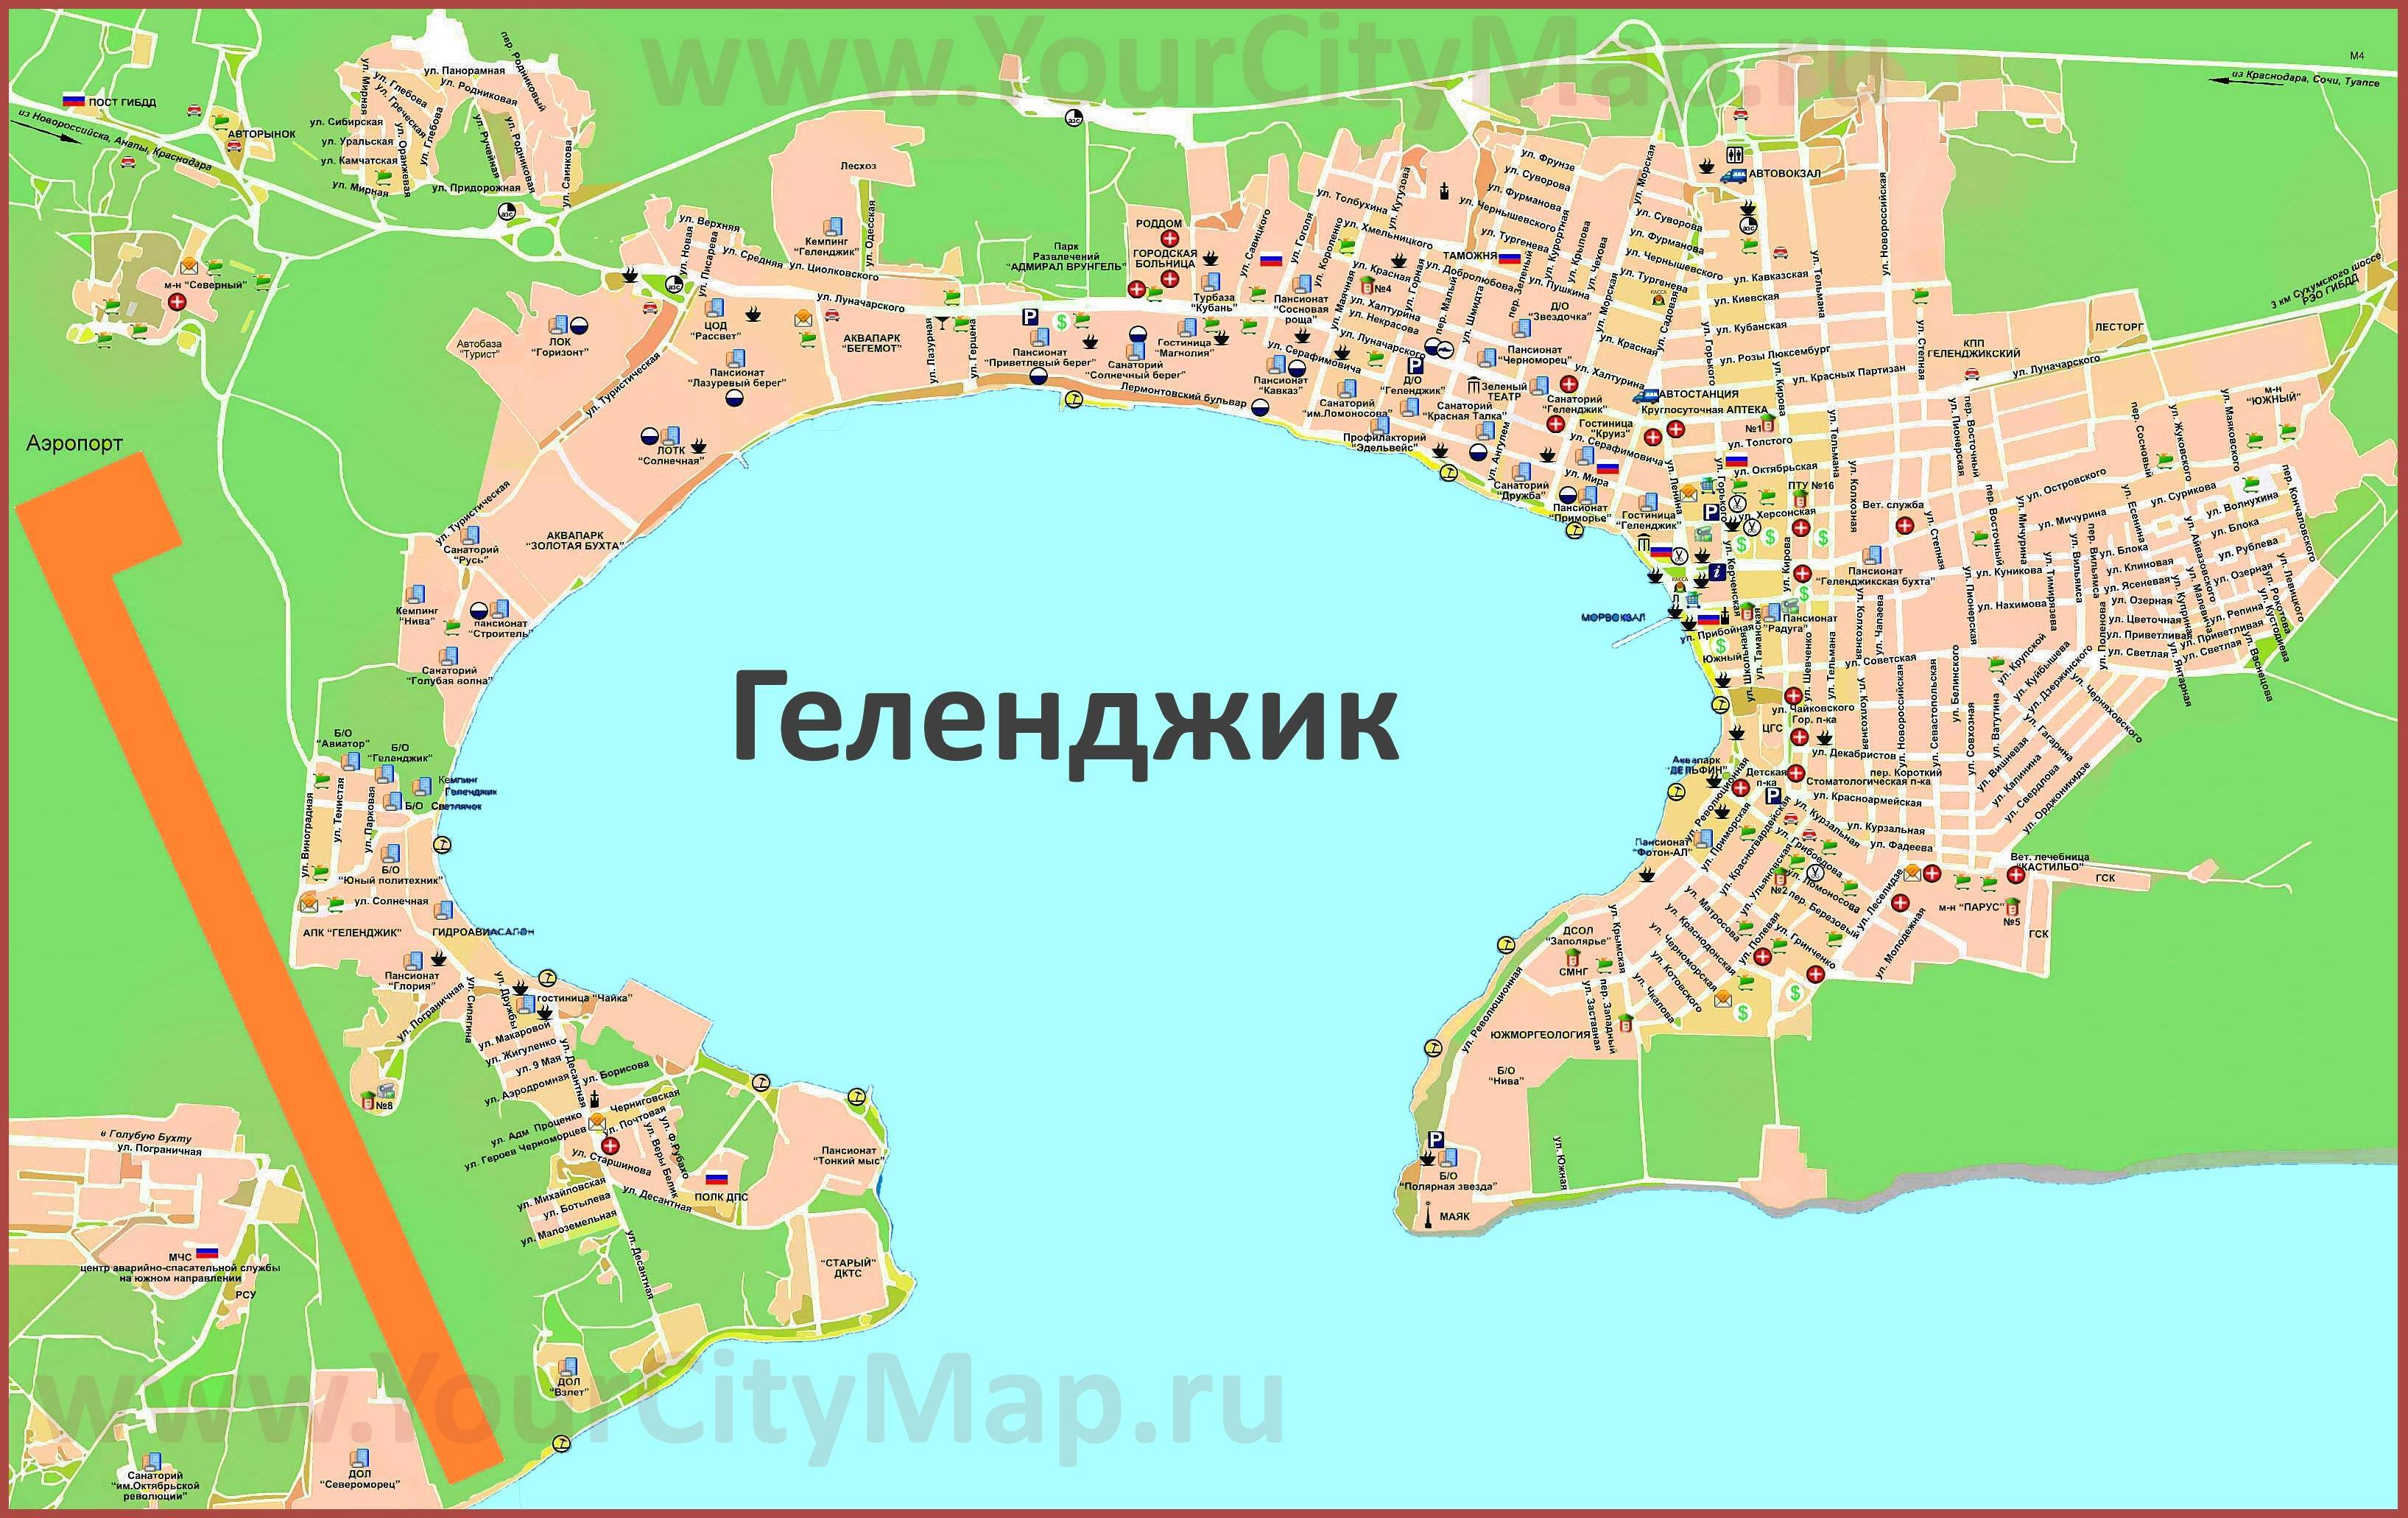 Карта геленджика с улицами и достопримечательностями